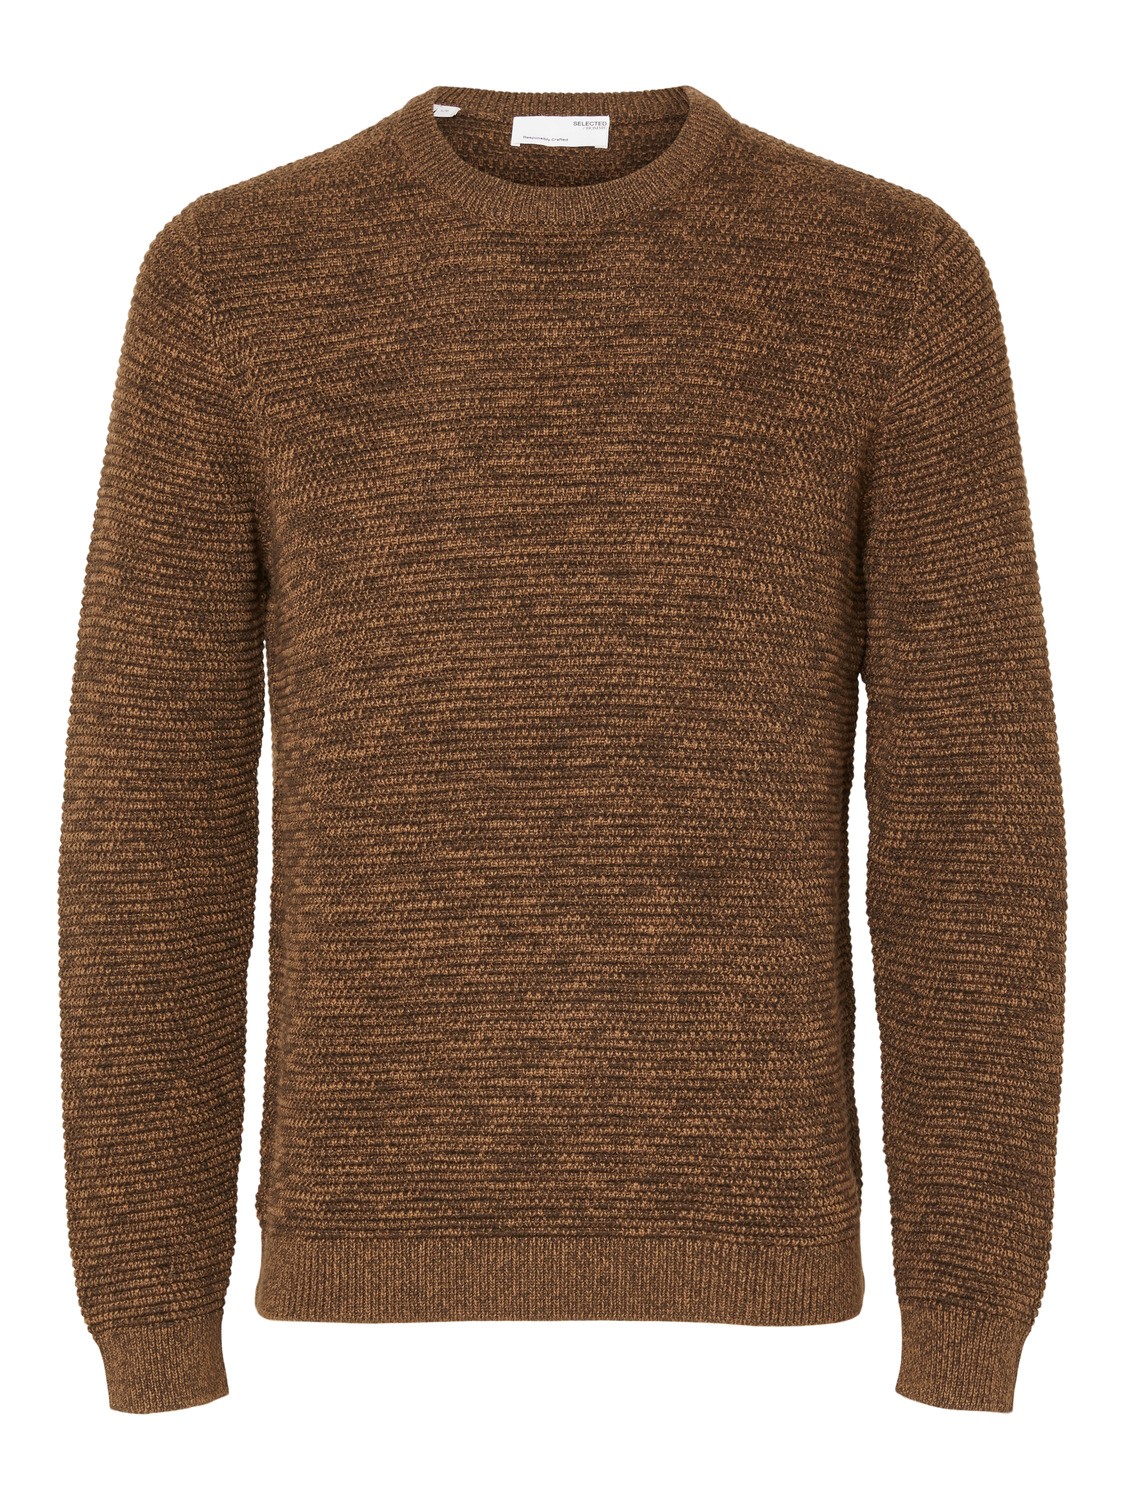 Пуловер SELECTED HOMME SLHVINCE, коричневый пуловер selected homme slhvince коричневый